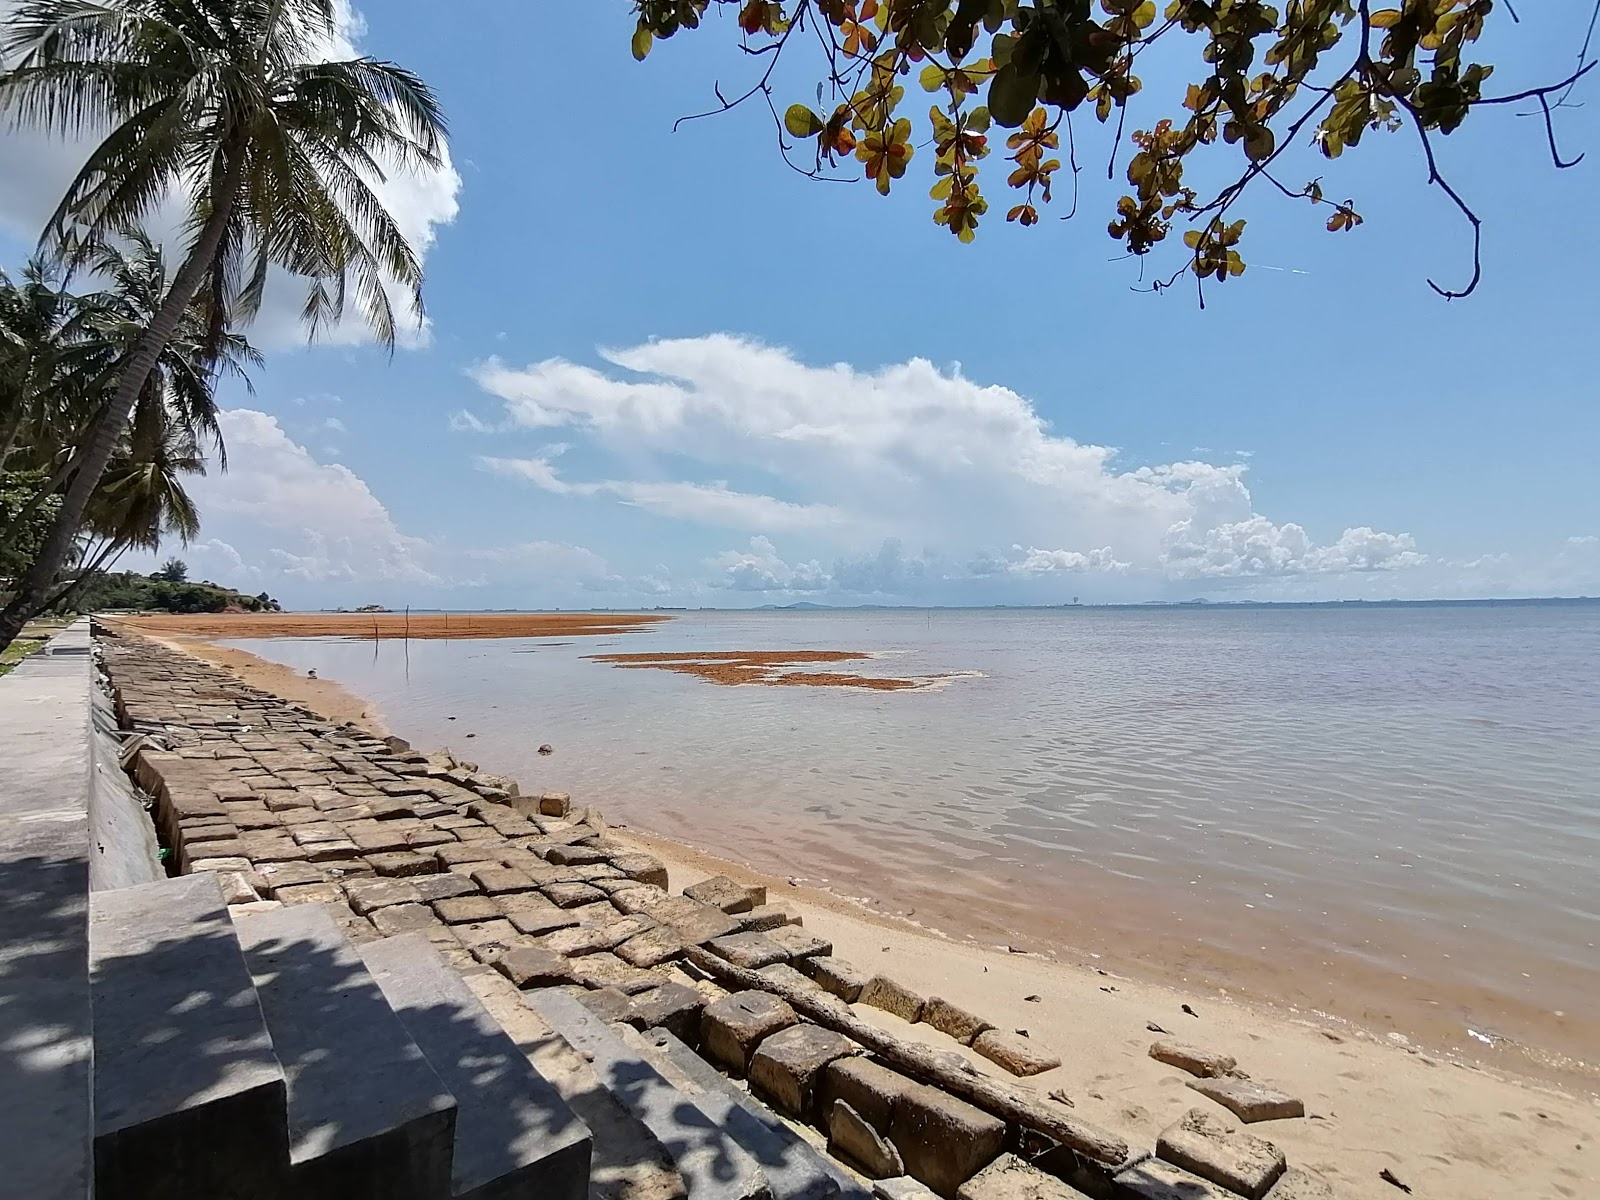 Foto af Pantai Tj. Bemban med lyserødt sand overflade